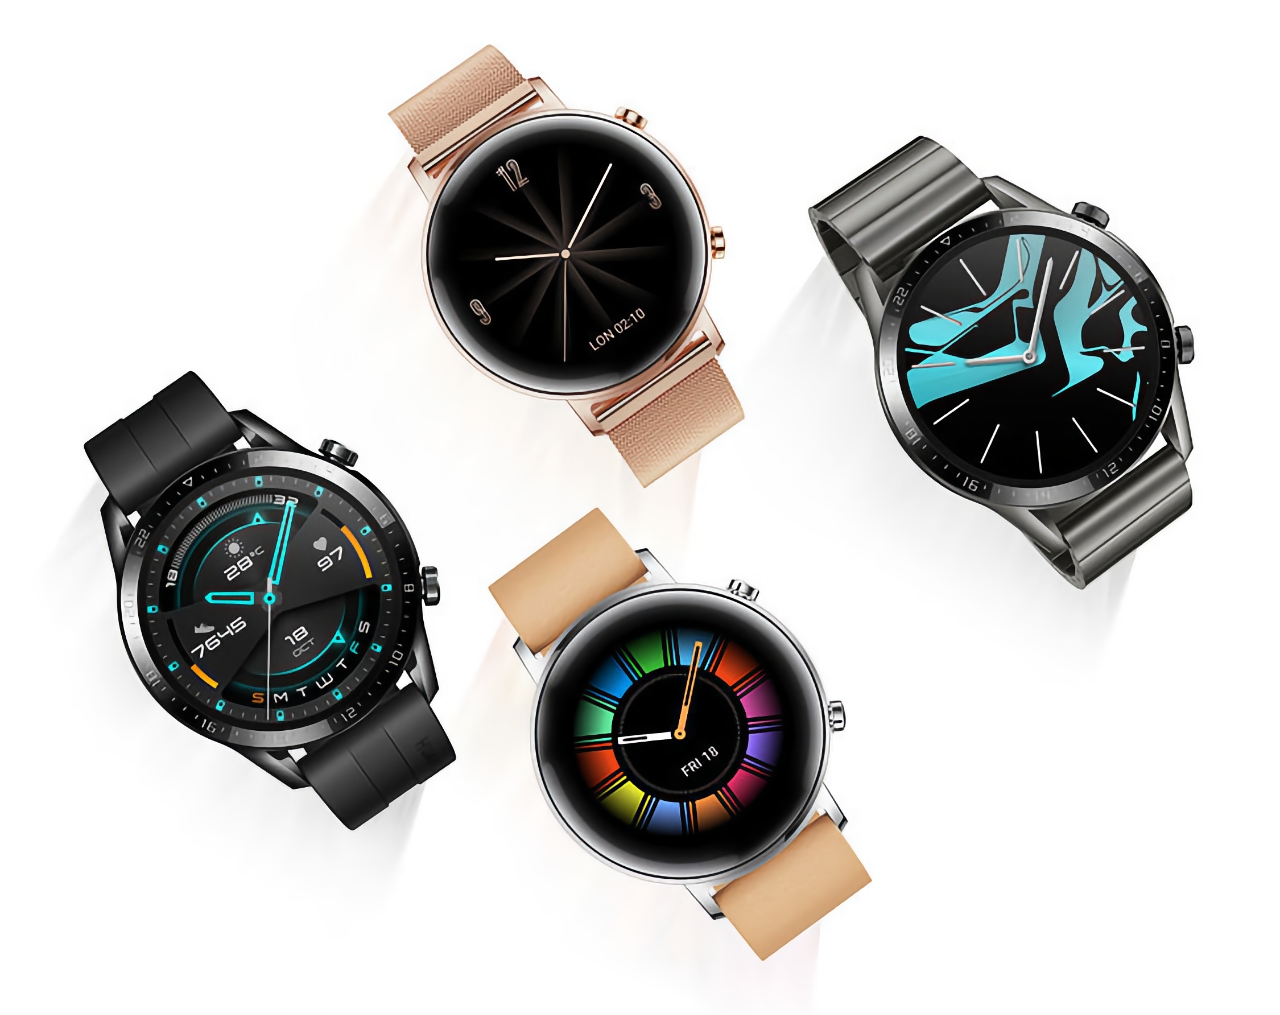 L'orologio intelligente Huawei Watch GT2 con l'aggiornamento ha ricevuto nuove funzionalità